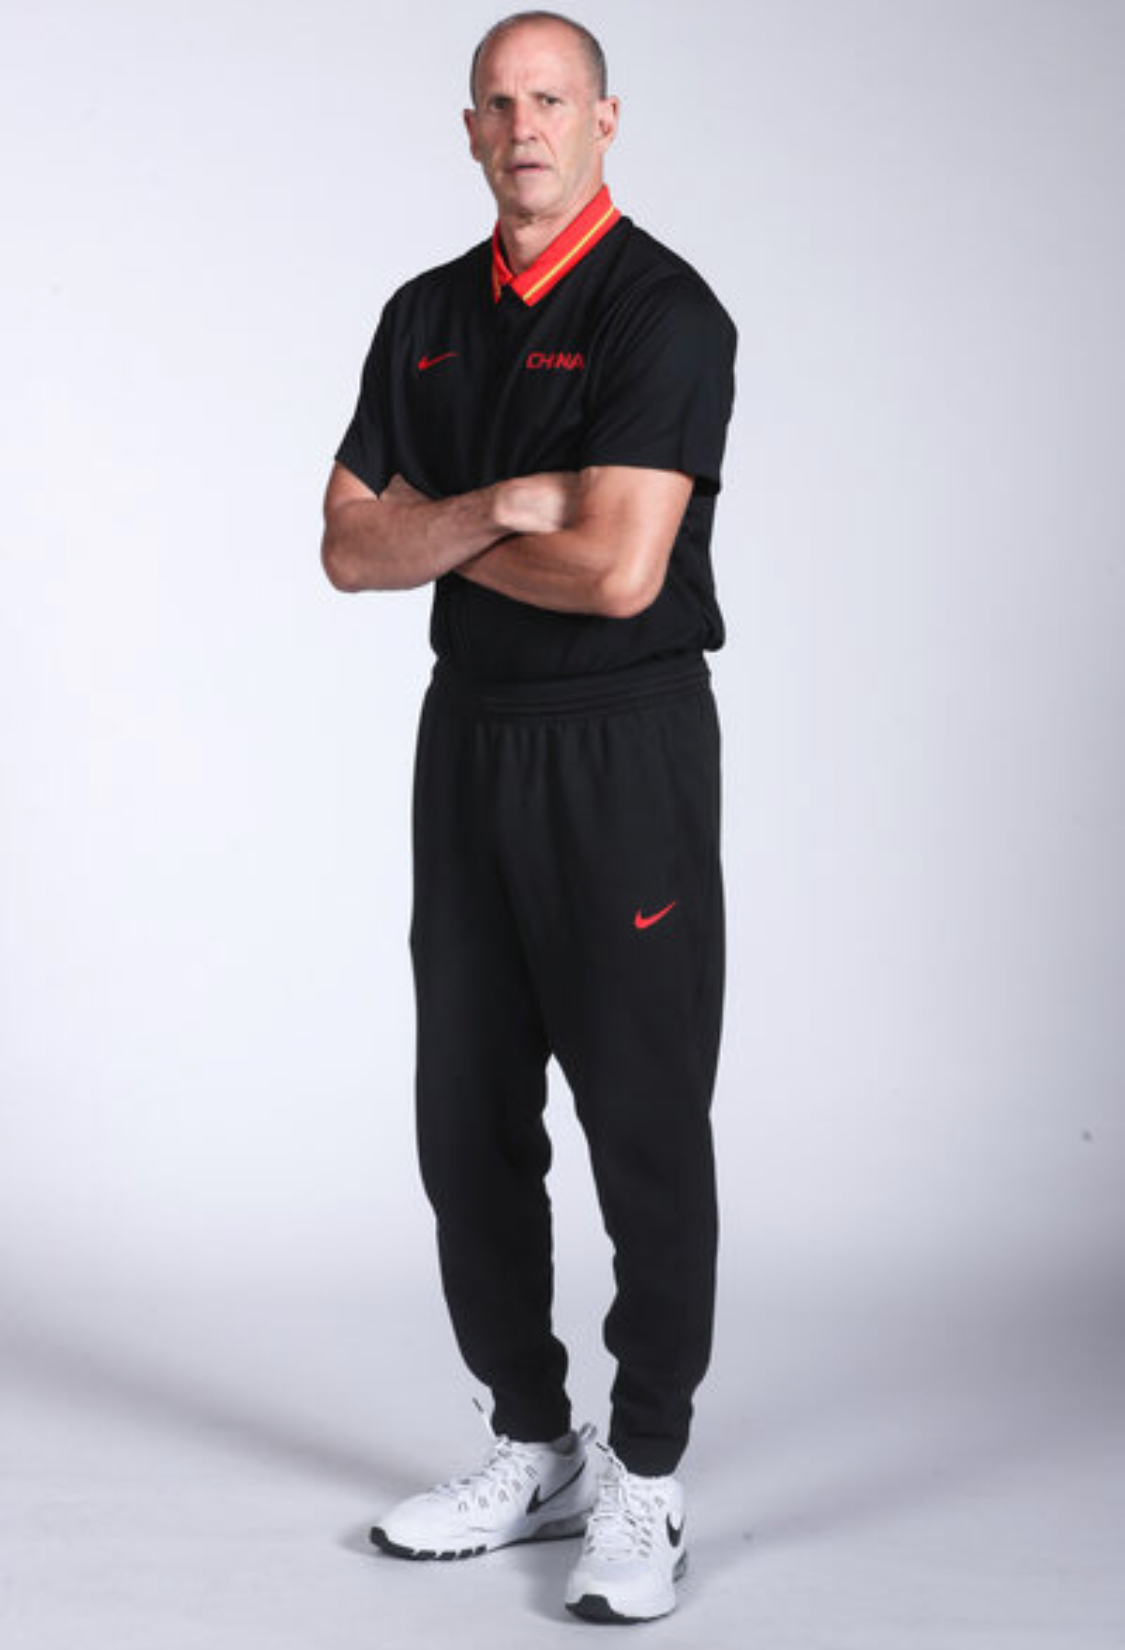 中国男篮红队官方写真,戈尔教练篇,收图吧(图片